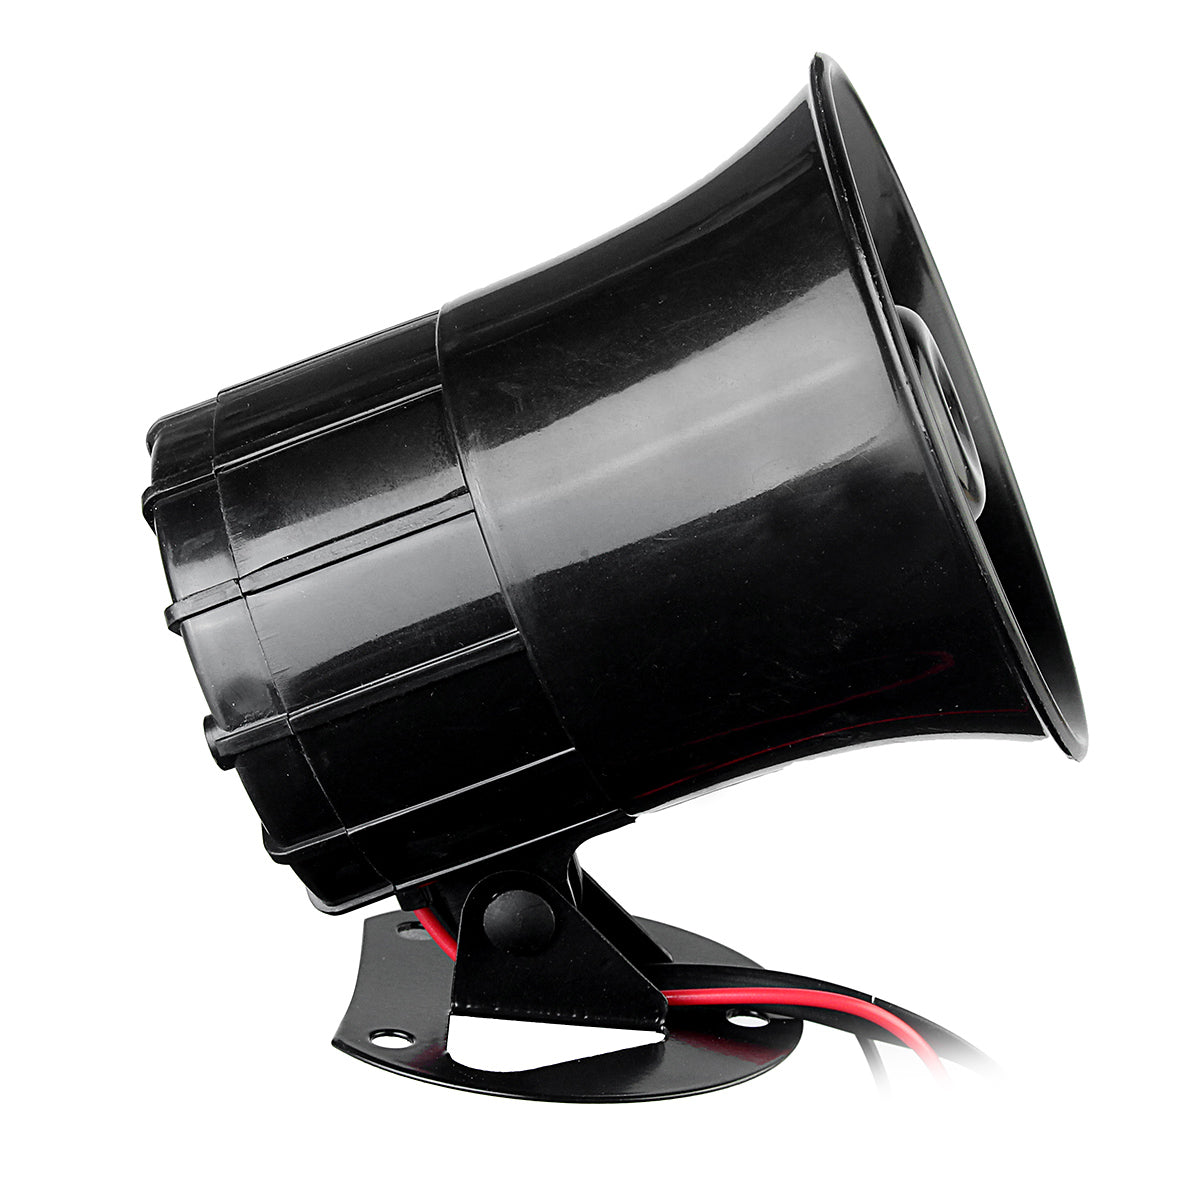 Black 4 Sound Loud 110dB 30W 12V Alarm Fire Horn Siren Speaker For Car Motorcycle RV